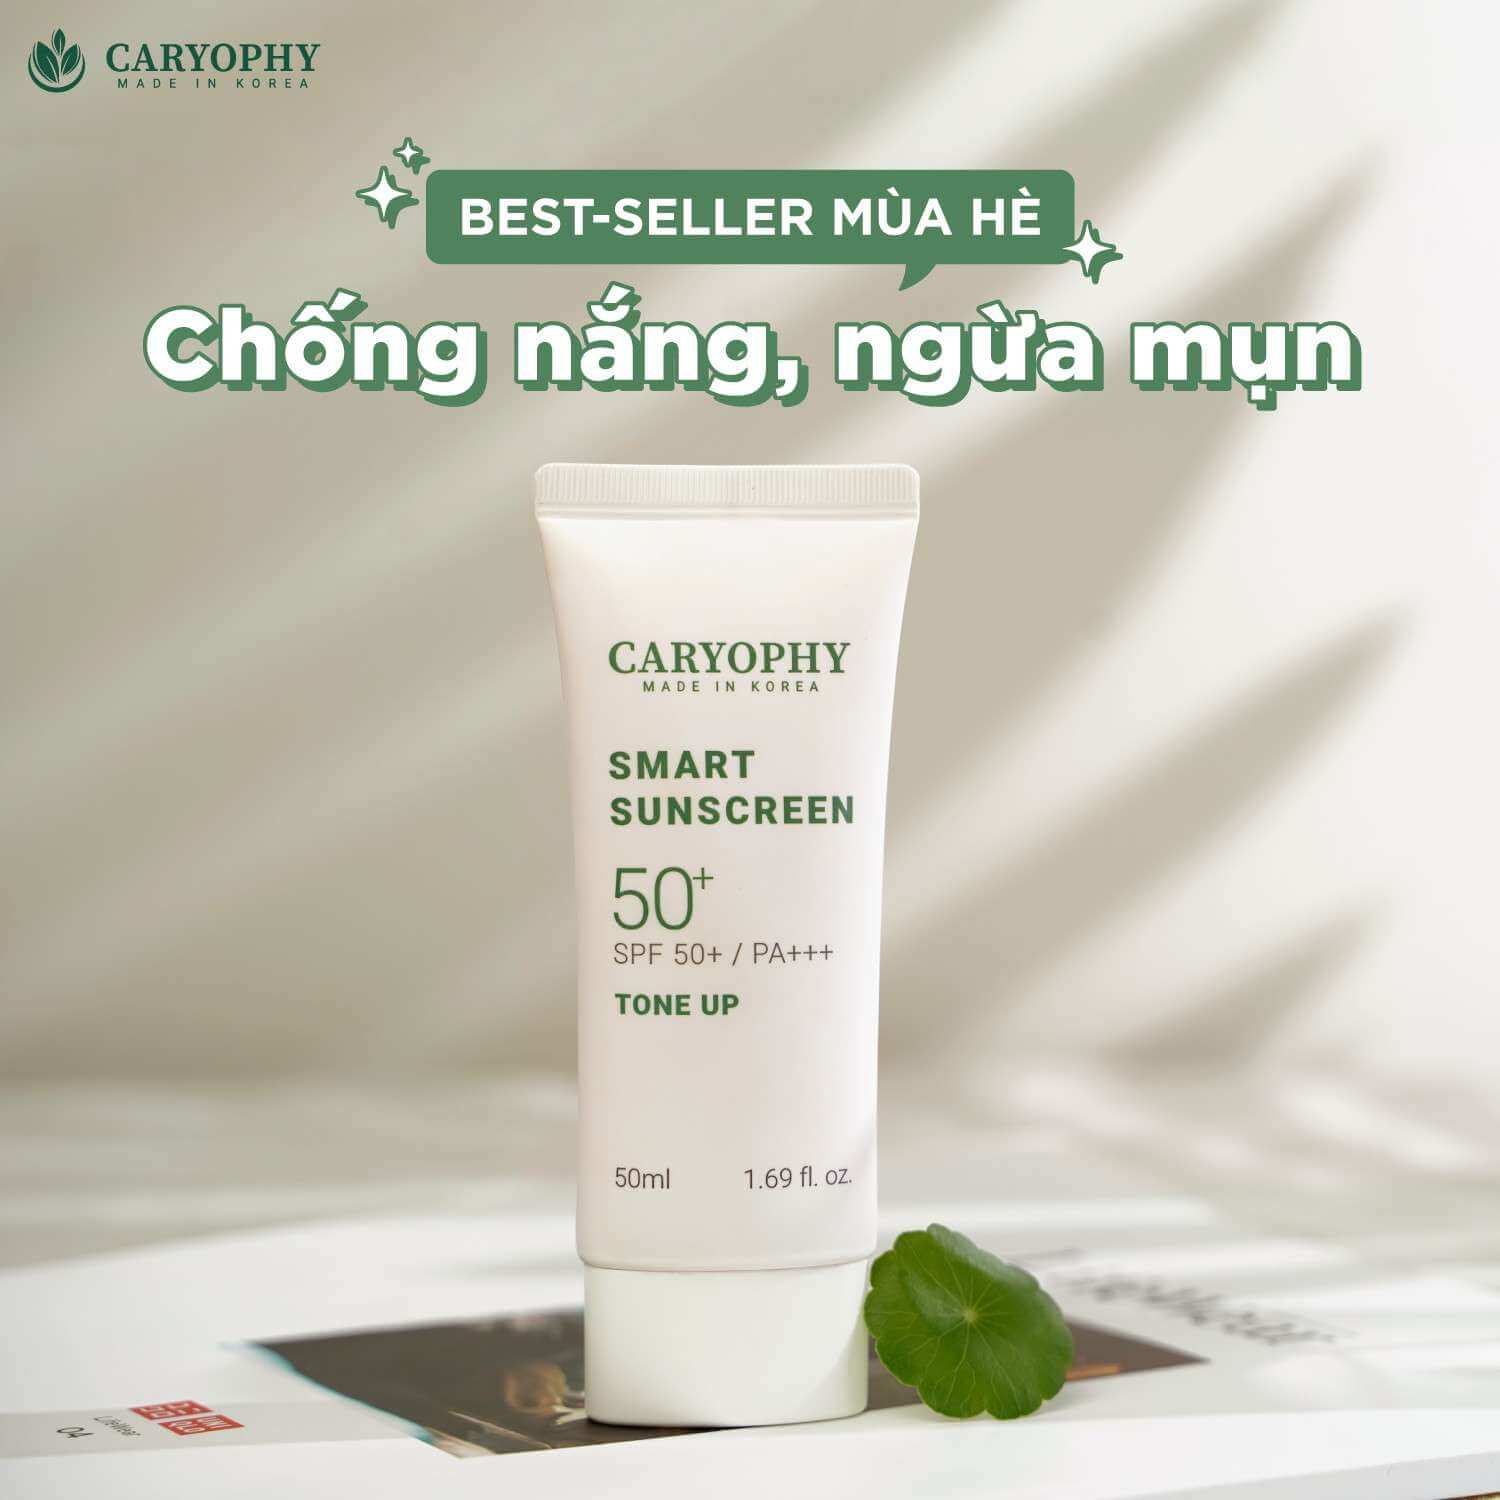  Caryophy Smart Sunscreen Tone Up chiết xuất từ rau má